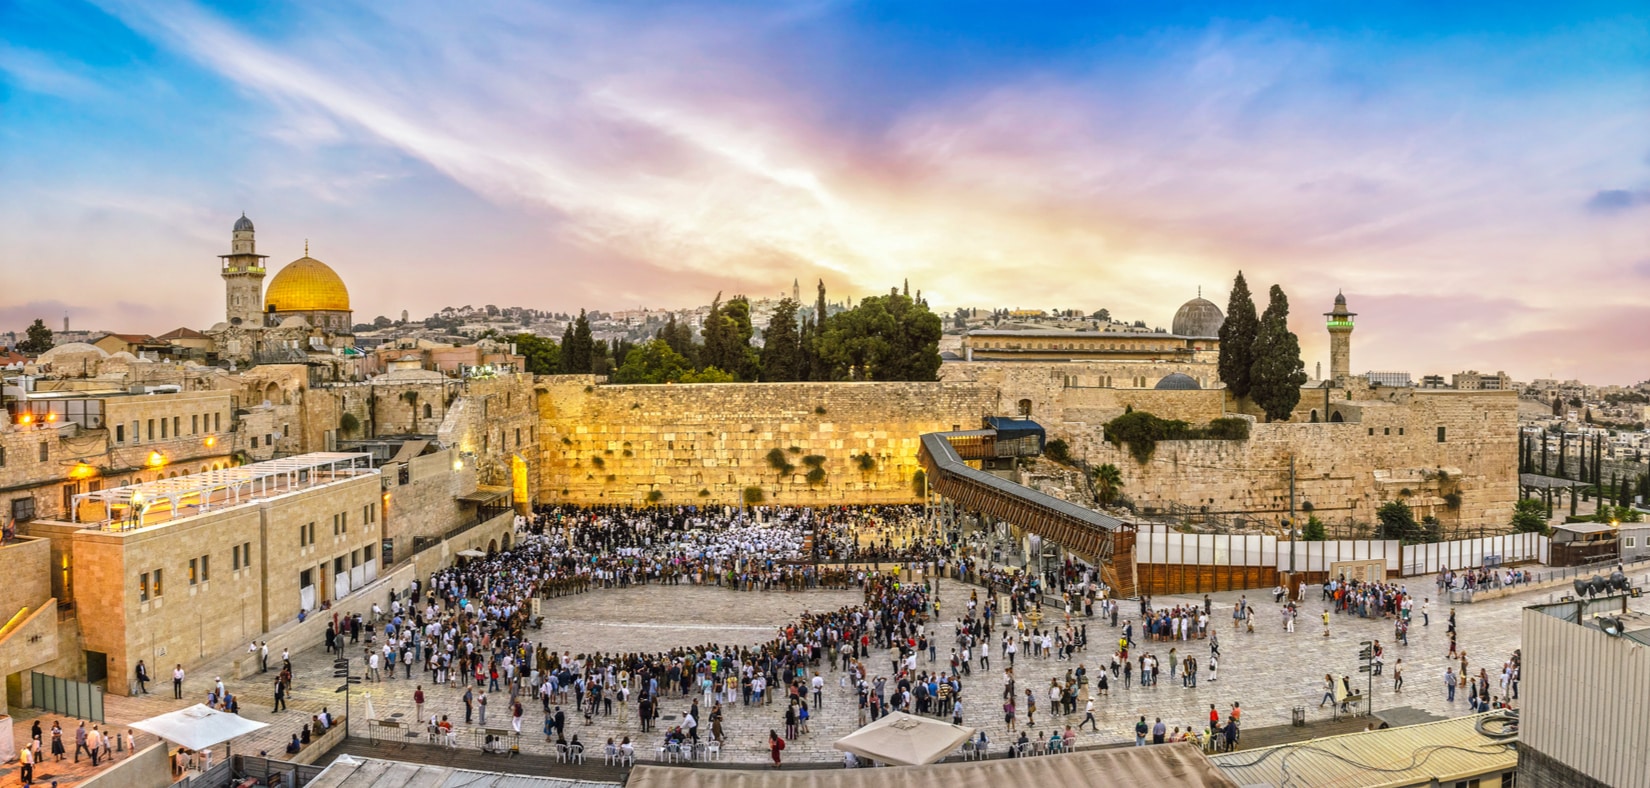 jerusalem as a tourist